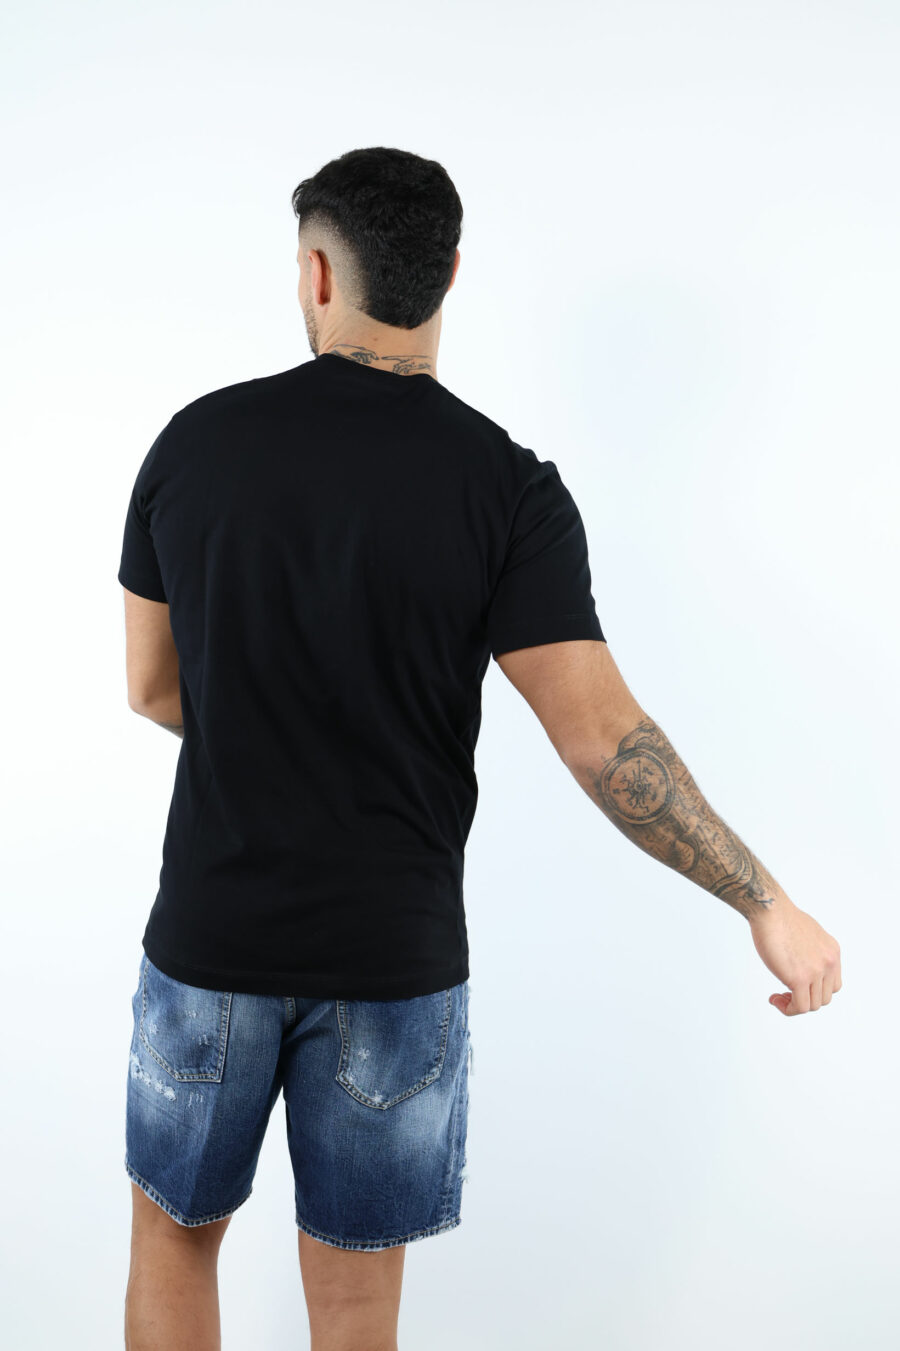 Schwarzes T-shirt mit Maxilogo "ceresio 9 milano" - 106864